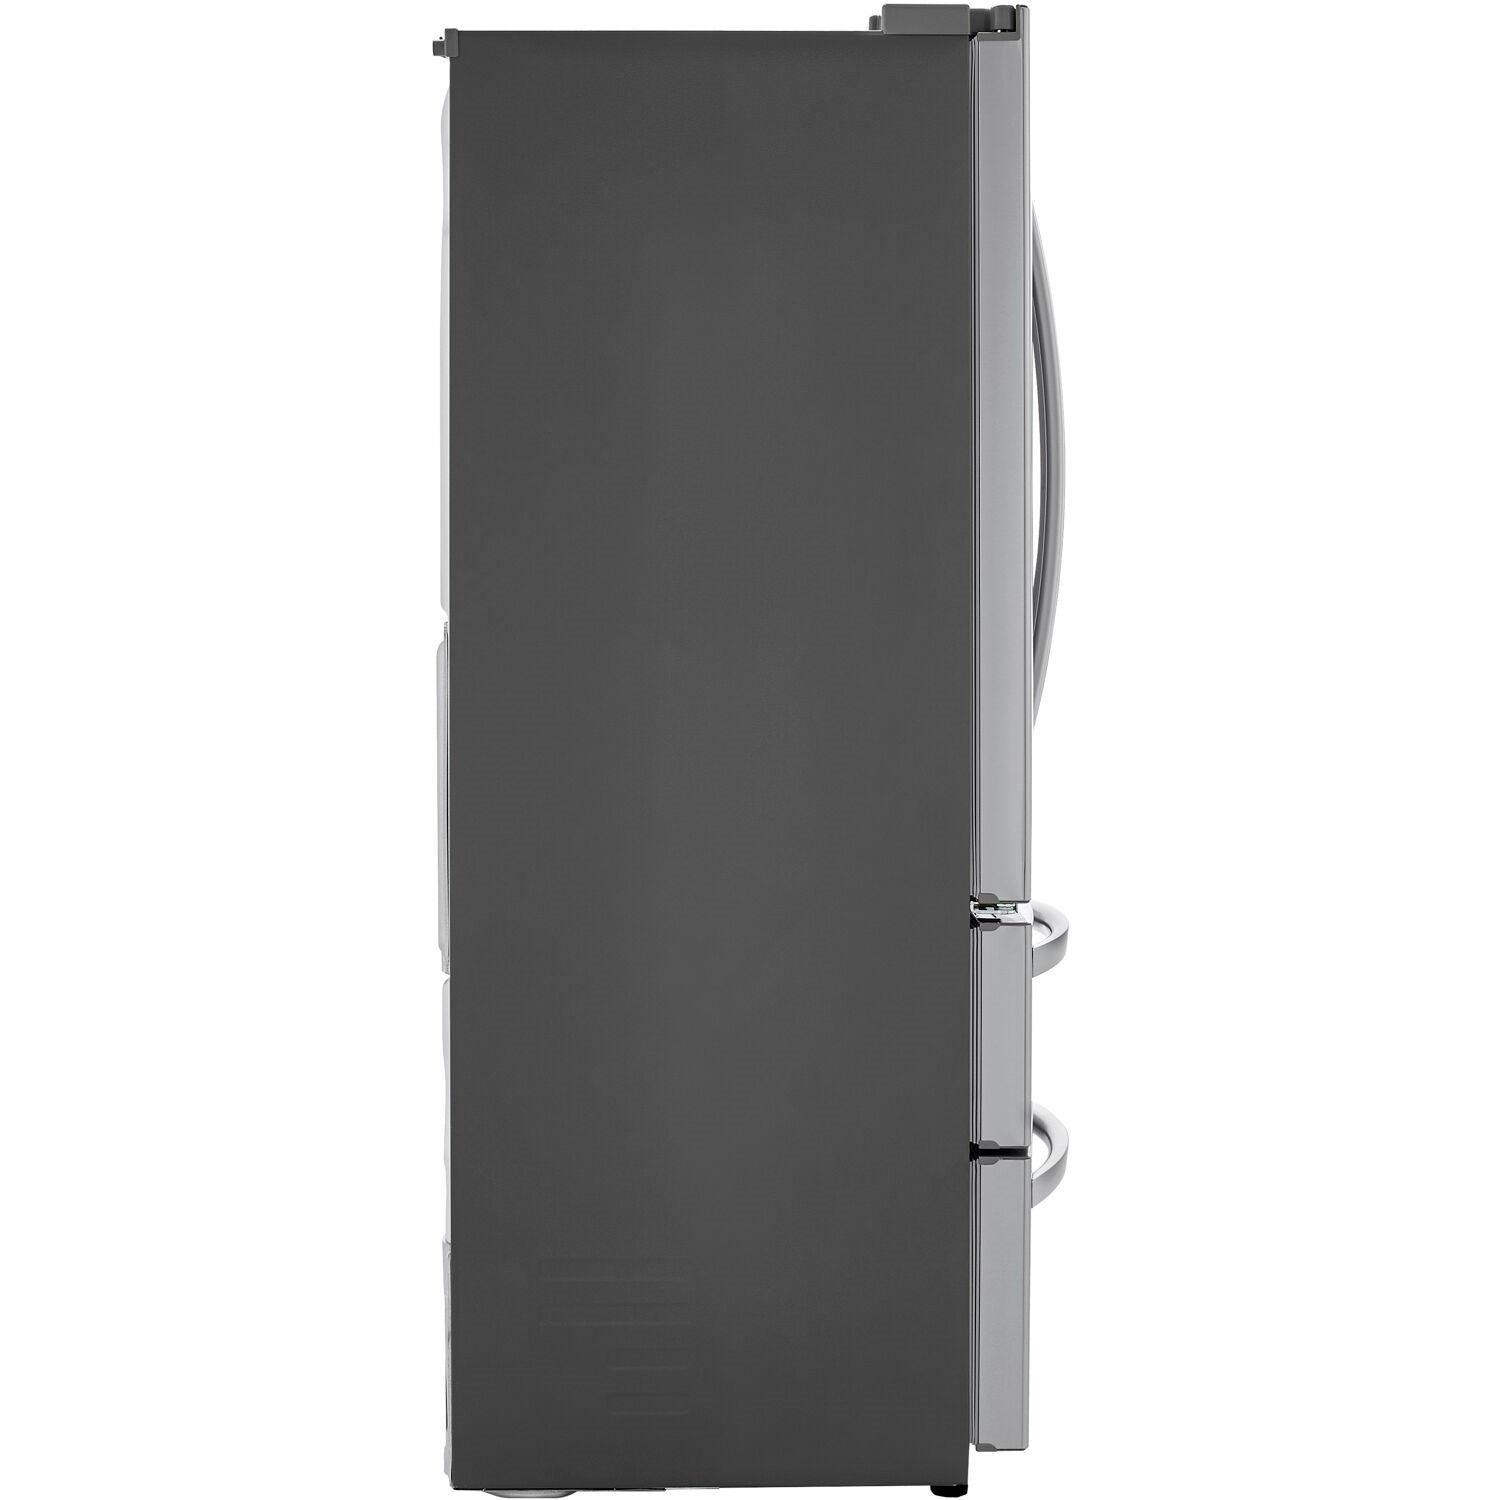 LG - 23 CF Counter-Depth 4-Door French Door, Dispenser